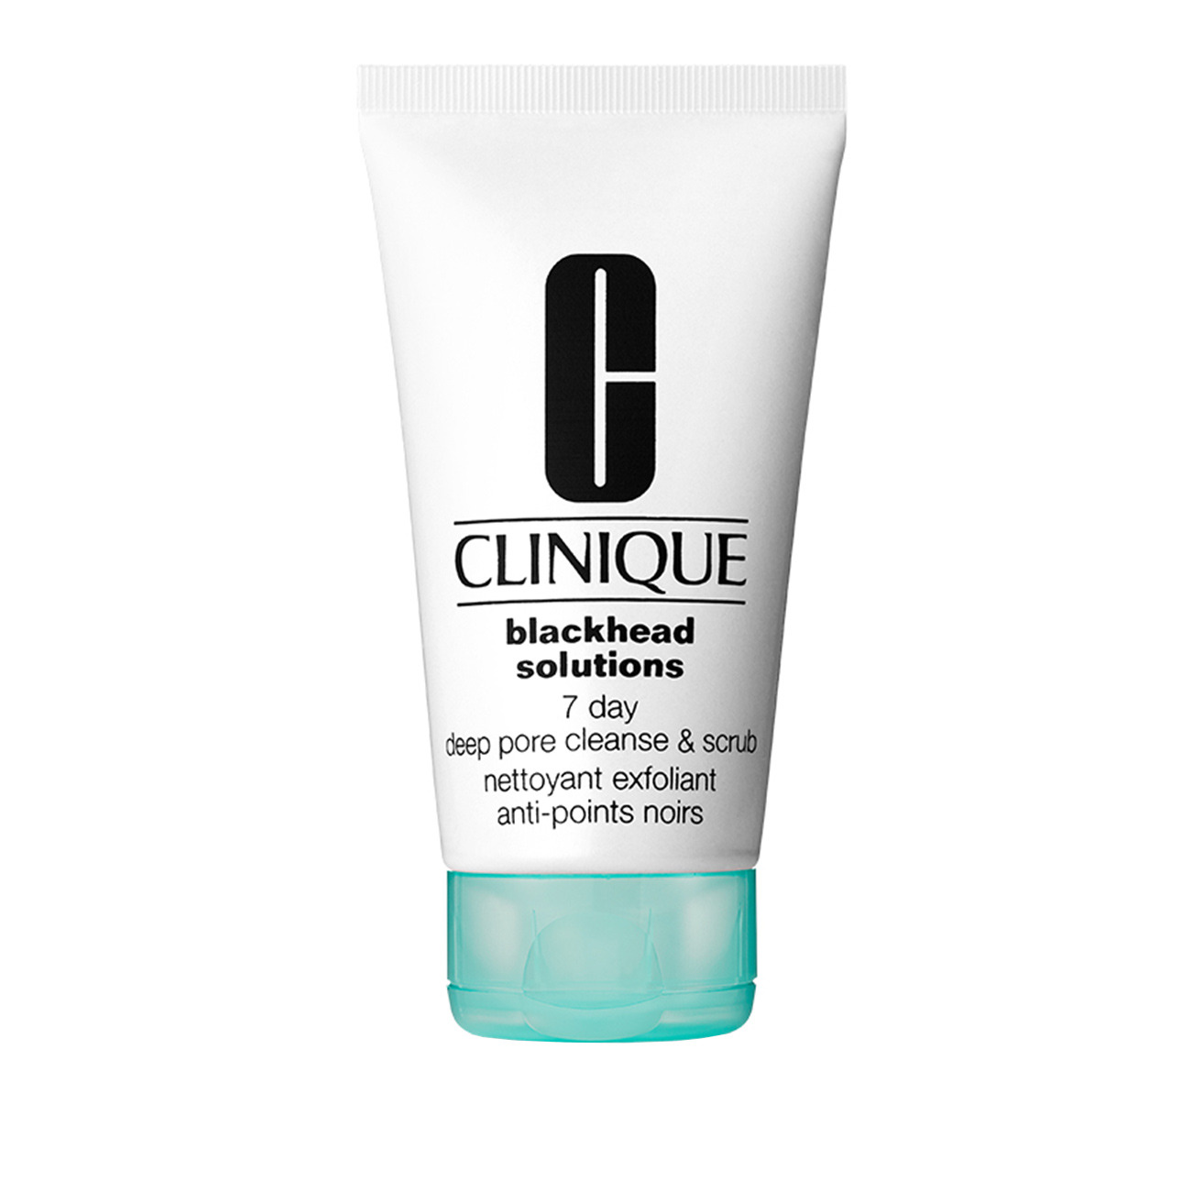 Clinique Blackhead Solutions 7 Day Deep Pore Cleanser & Scrub 125 ml